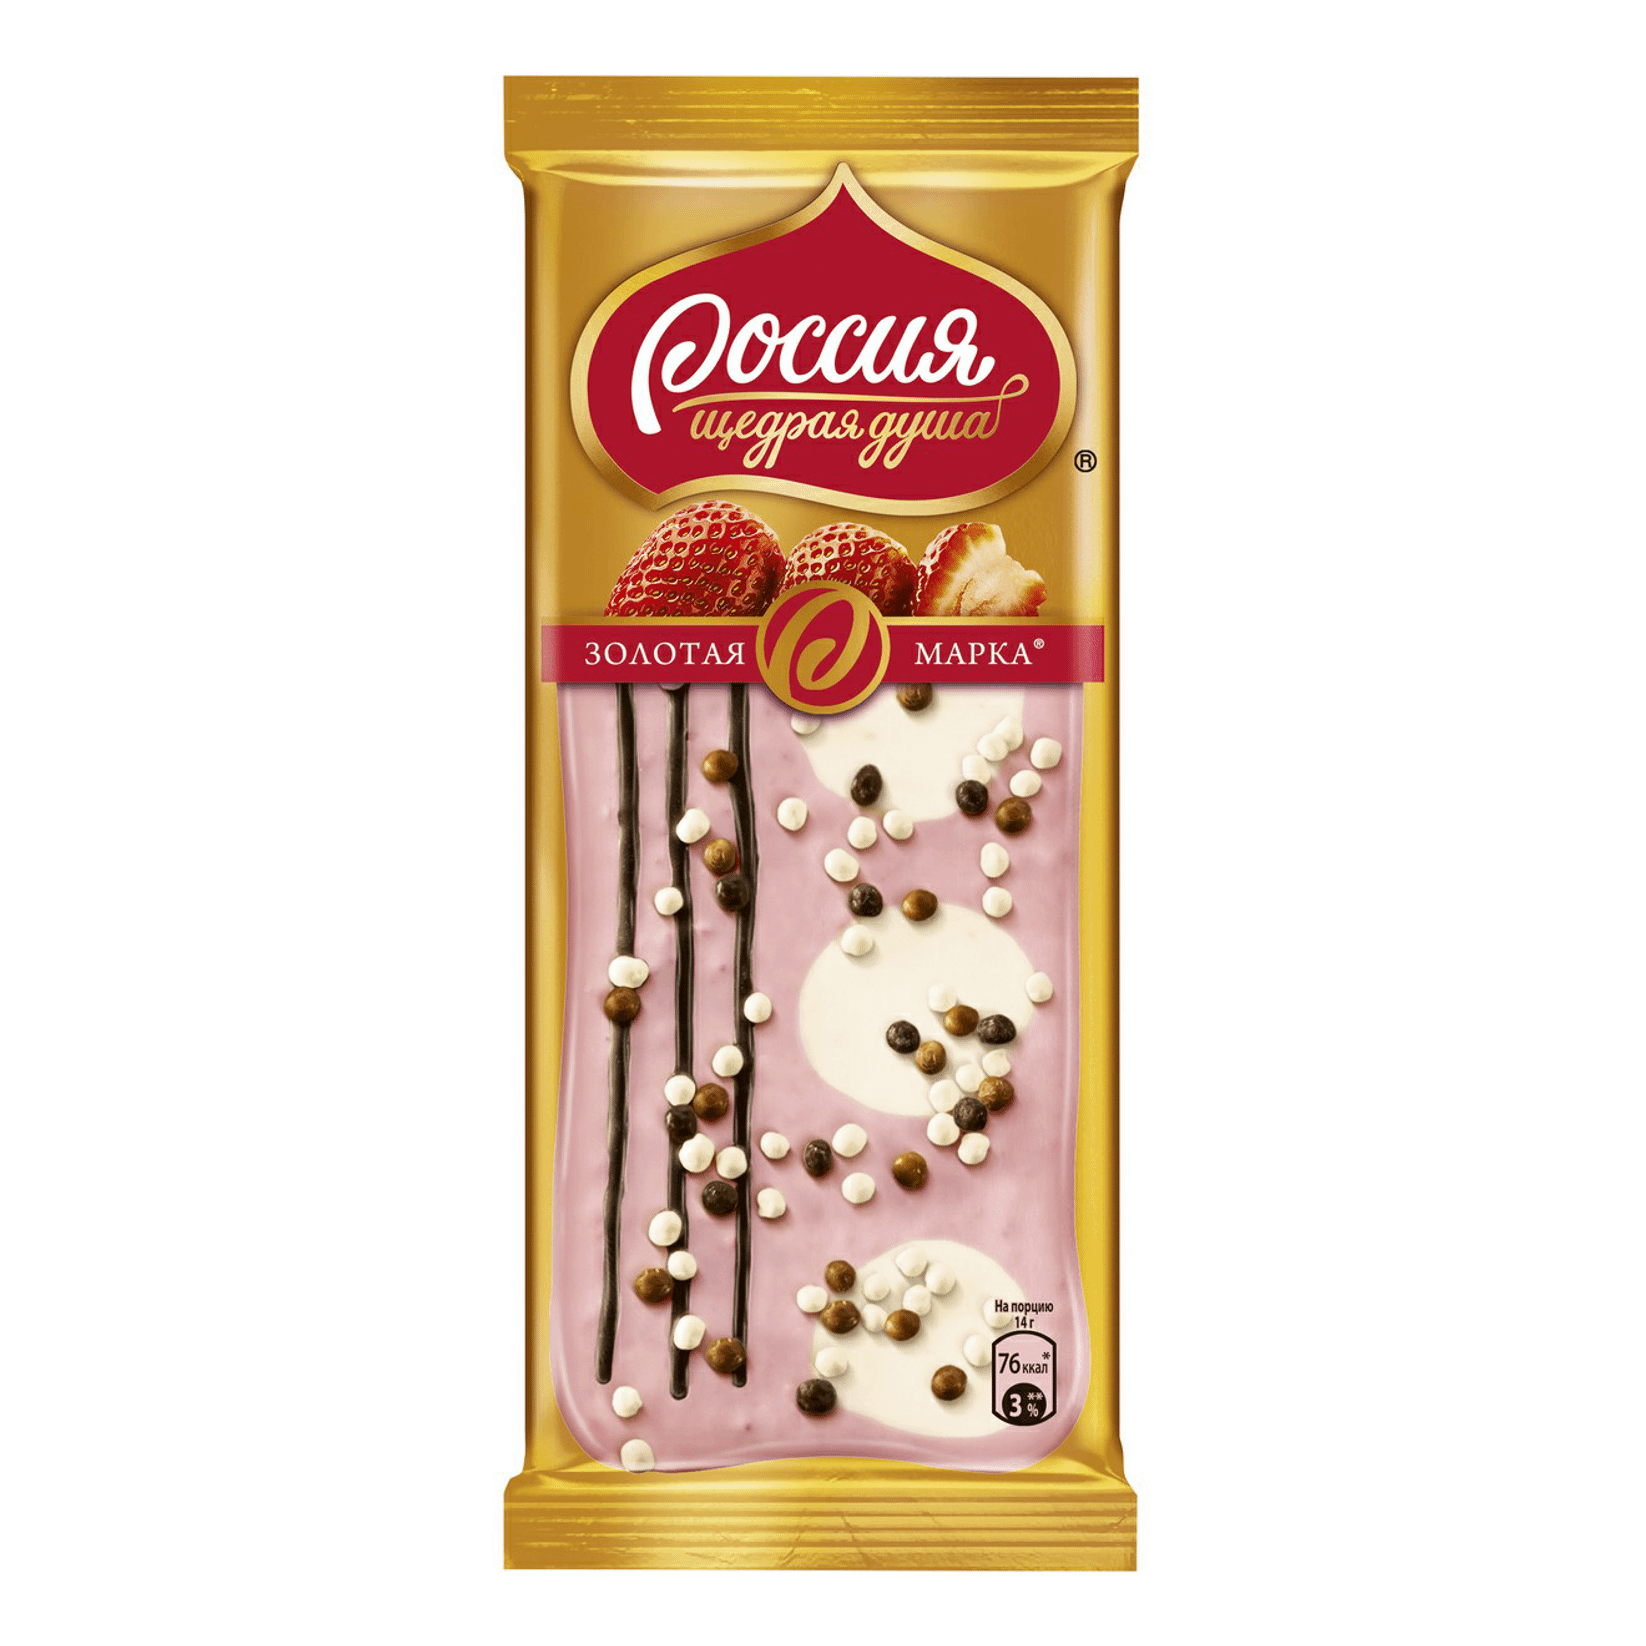 Шоколад белый Россия щедрая душа с клубникой декорированный, 85 г шоколад россия щедрая душа золотая марка дуэт в молочном с арахисом 85 г